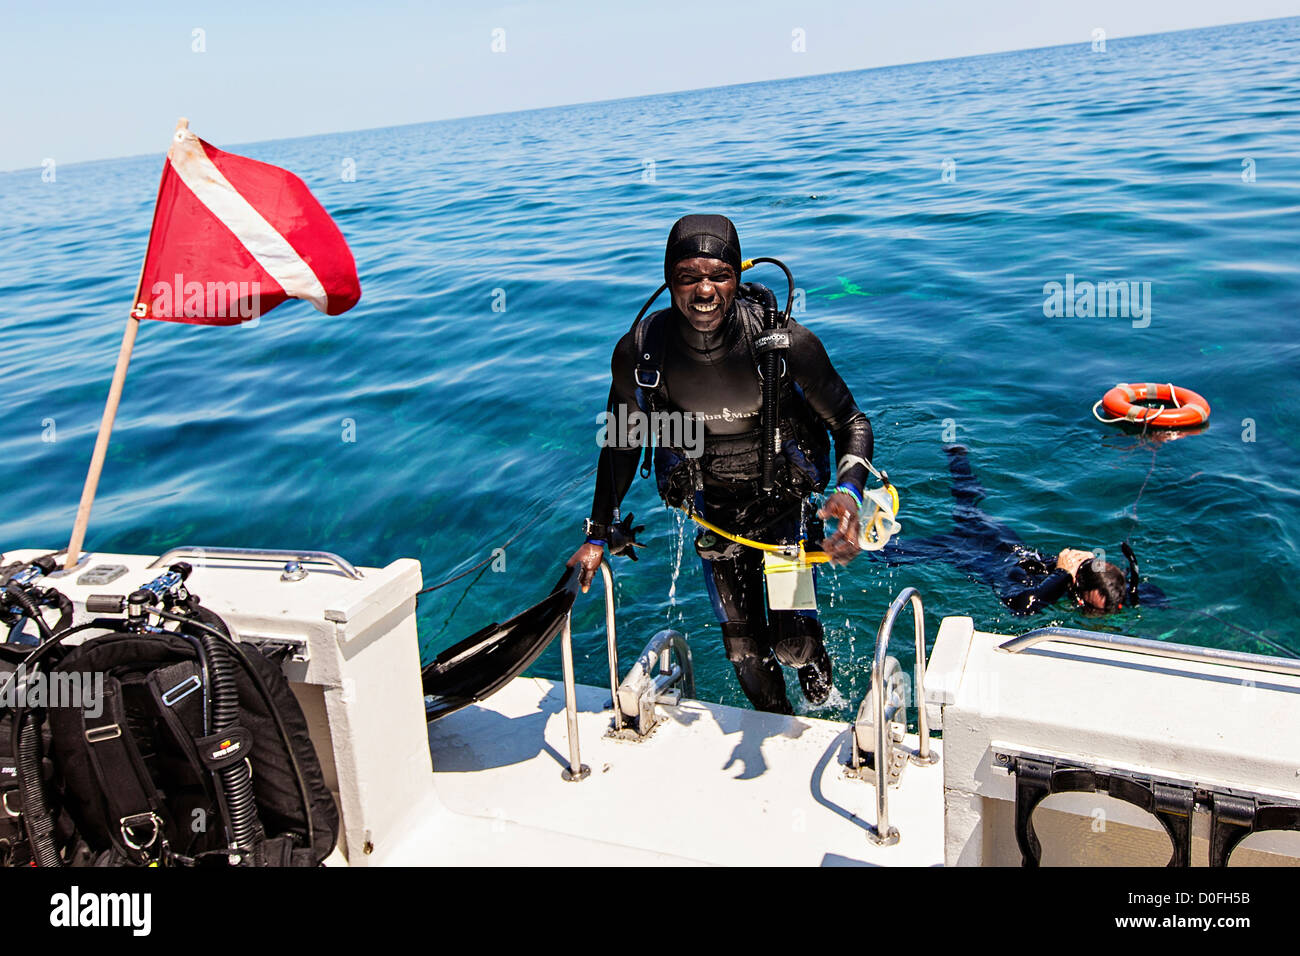 Scuba Max Scuba Dive Flag and Float